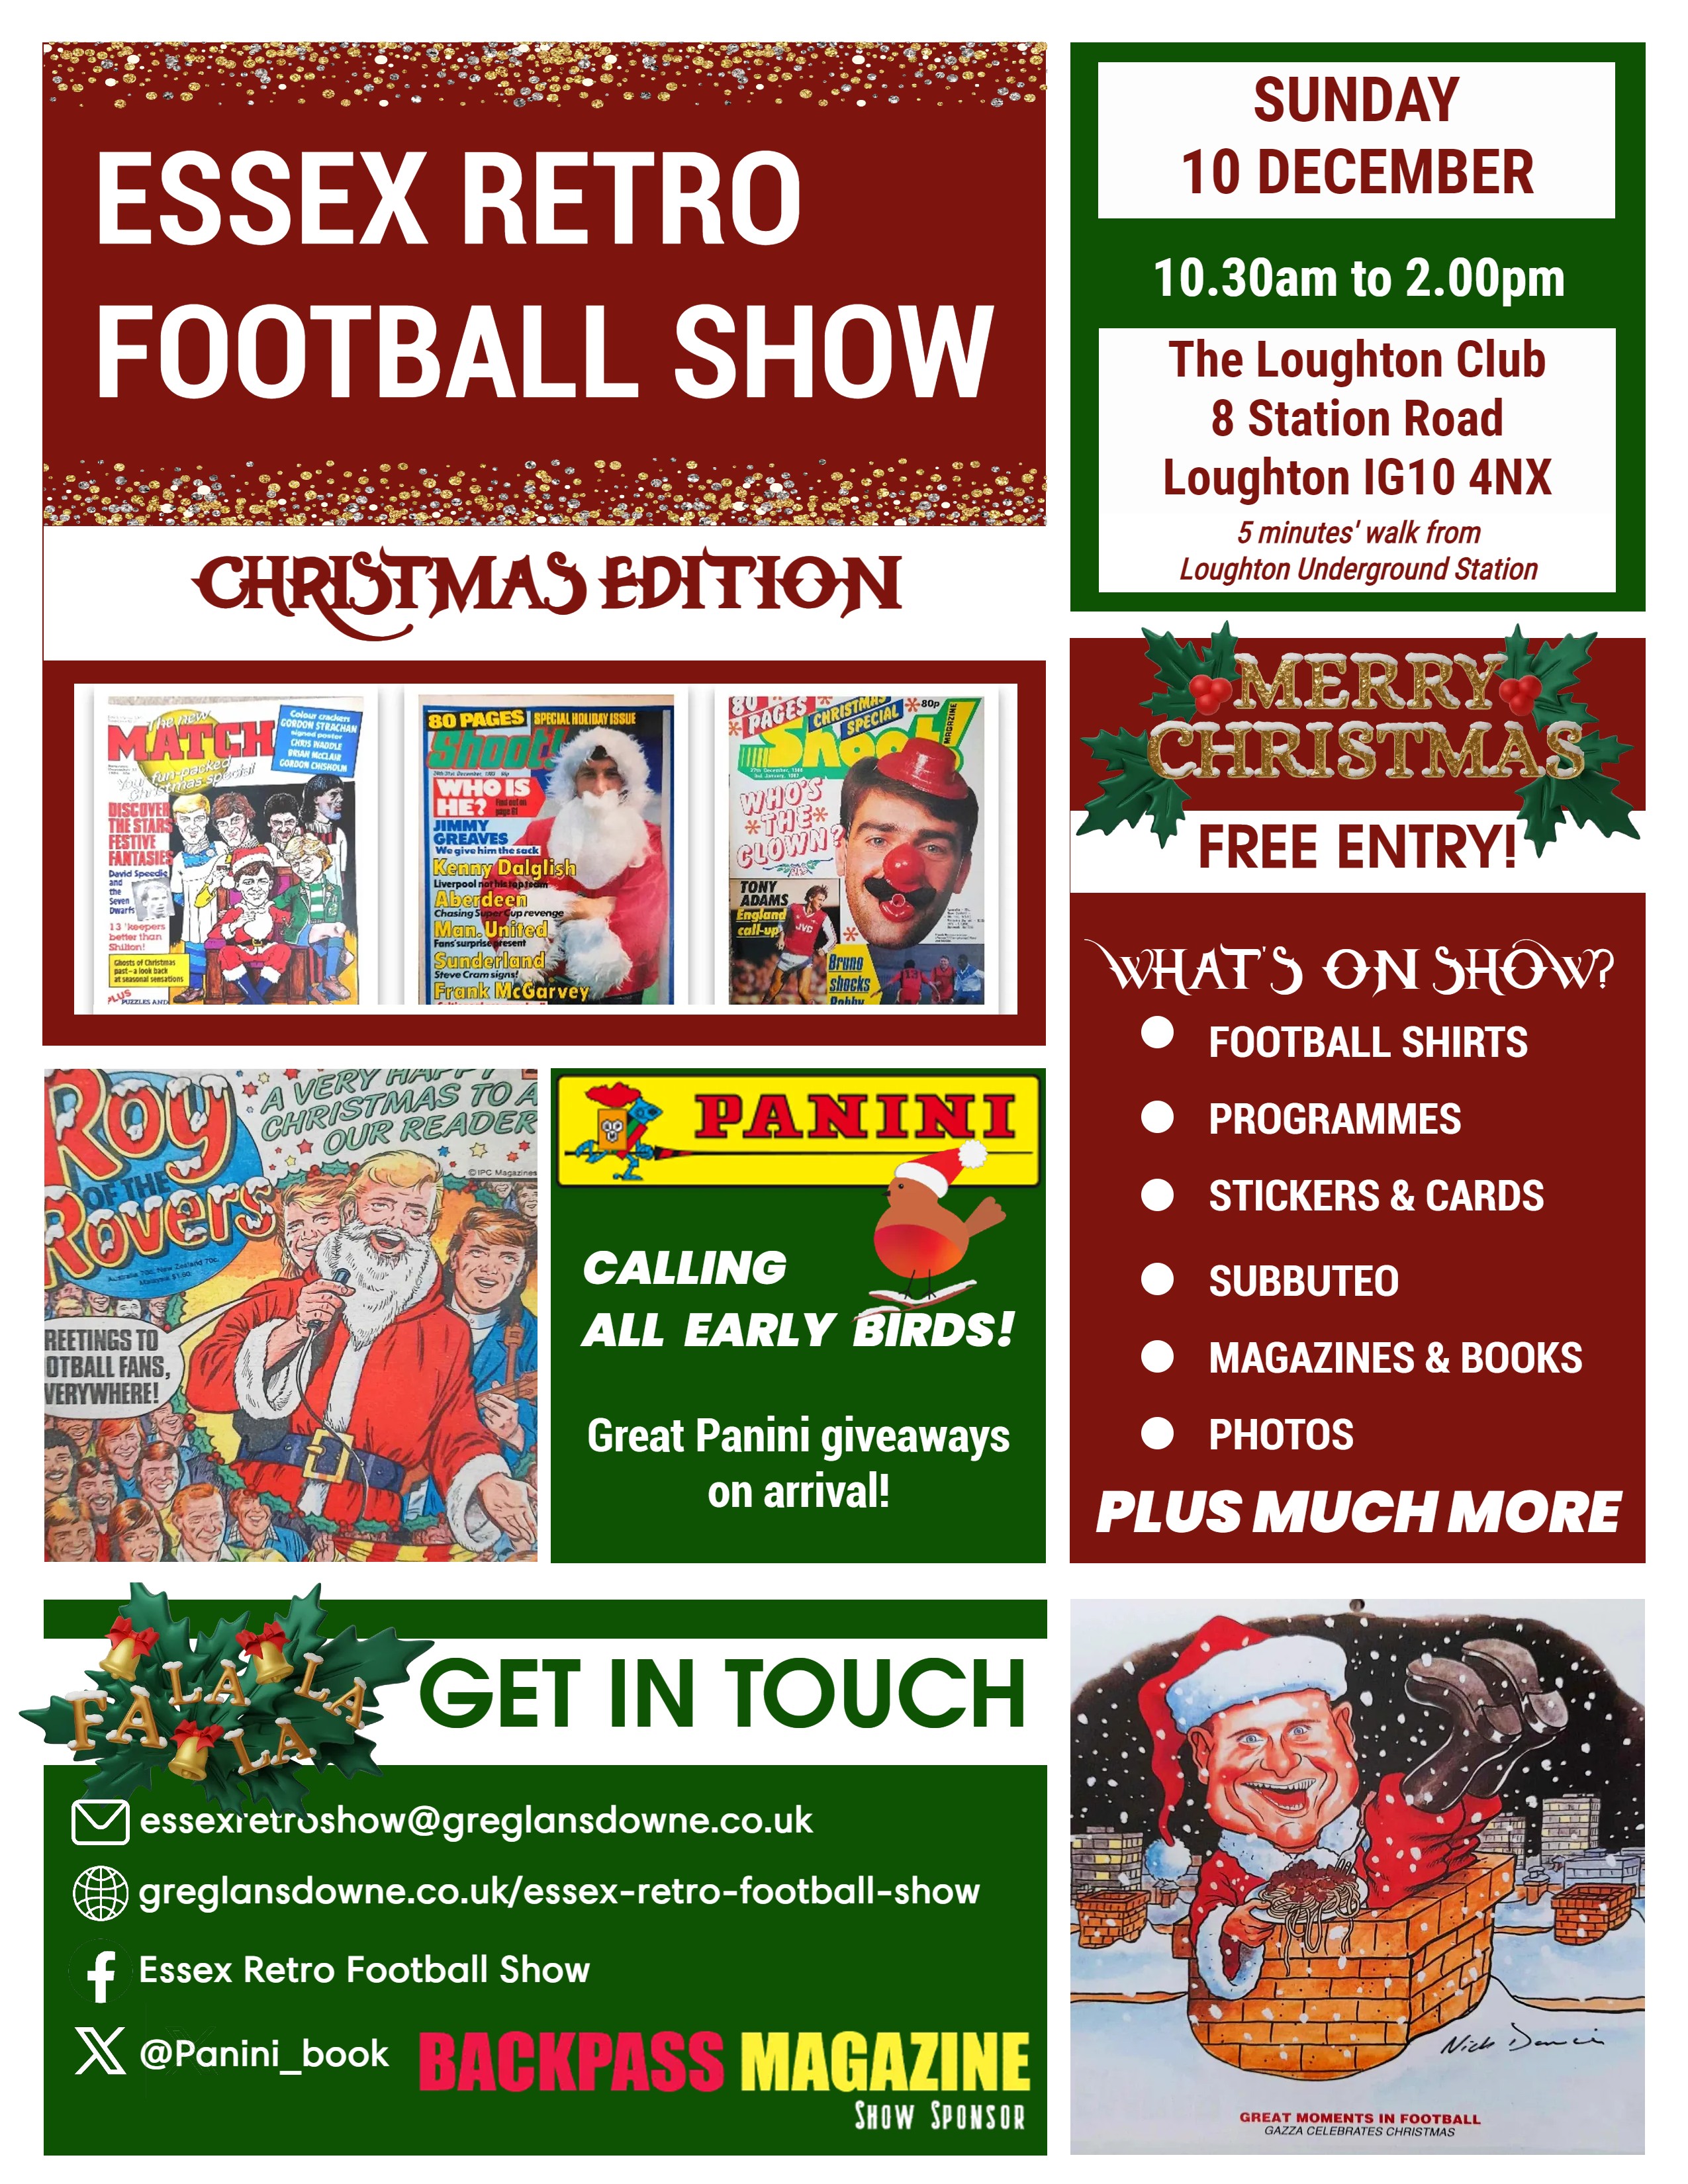 Essex Retro Football Show: Get set for December event 